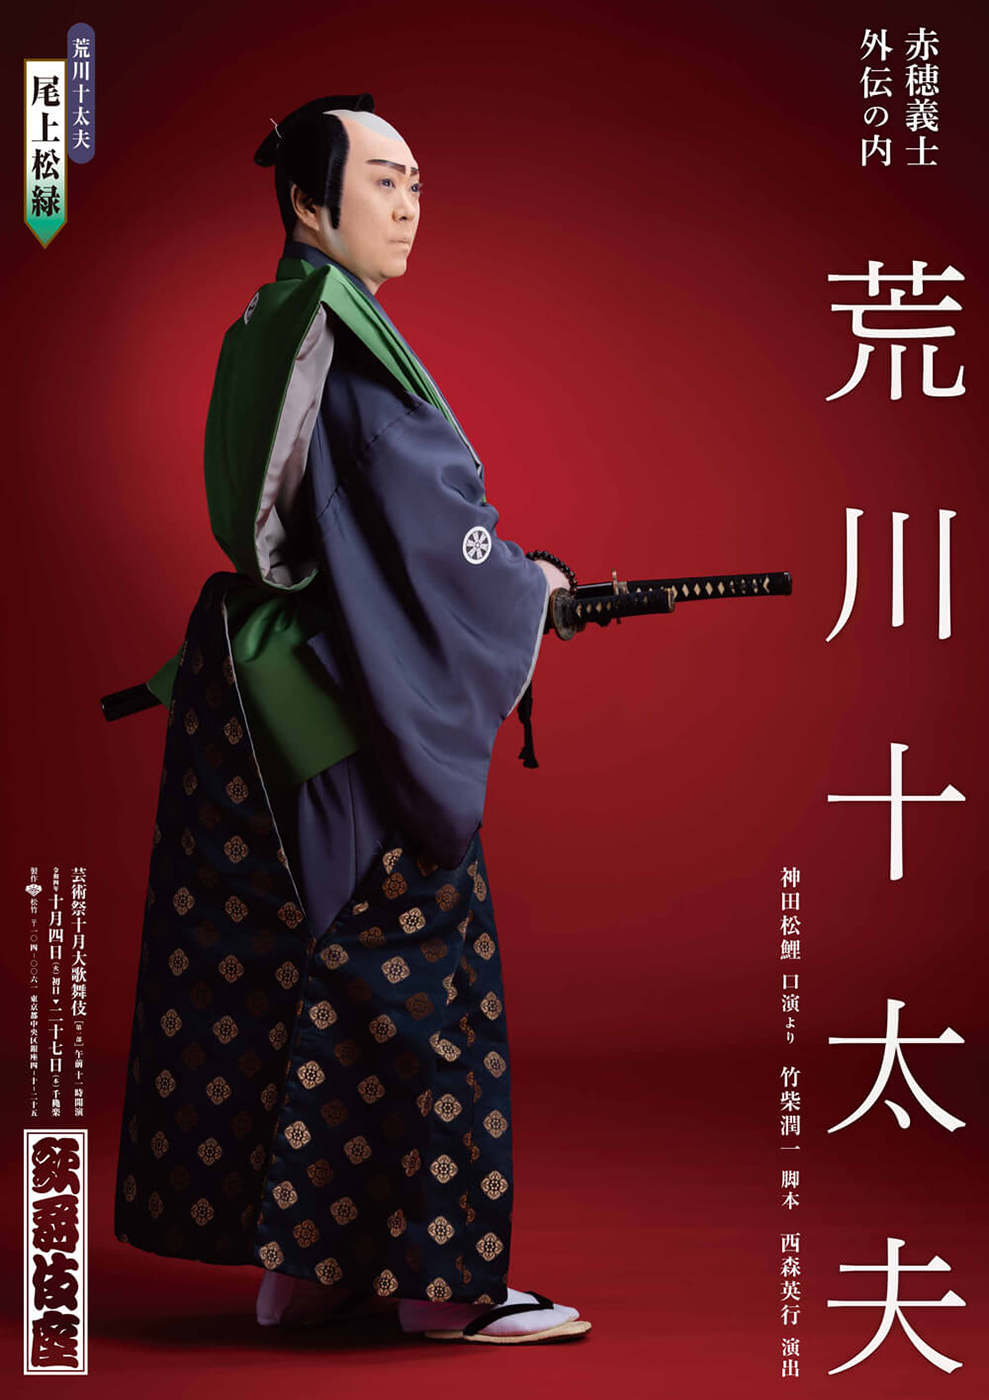 芸術祭十月大歌舞伎 第一部『鬼揃紅葉狩』『荒川十太夫』